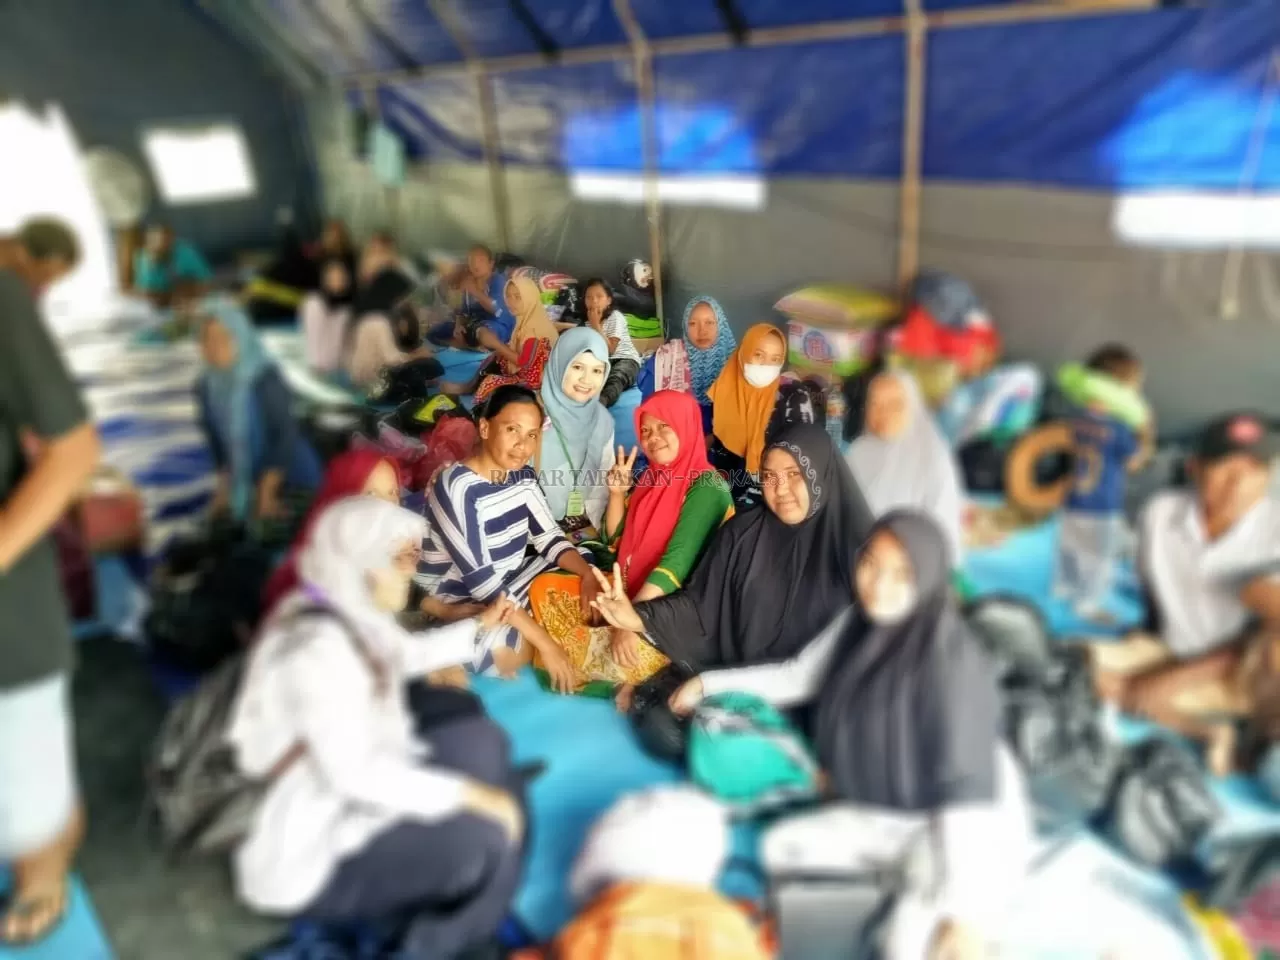 BENTUK PENDAMPINGAN: Tim HIMPSI Wilayah Kaltara saat melakukan pendampingan di tenda posko pengungsian, Jumat (24/1).